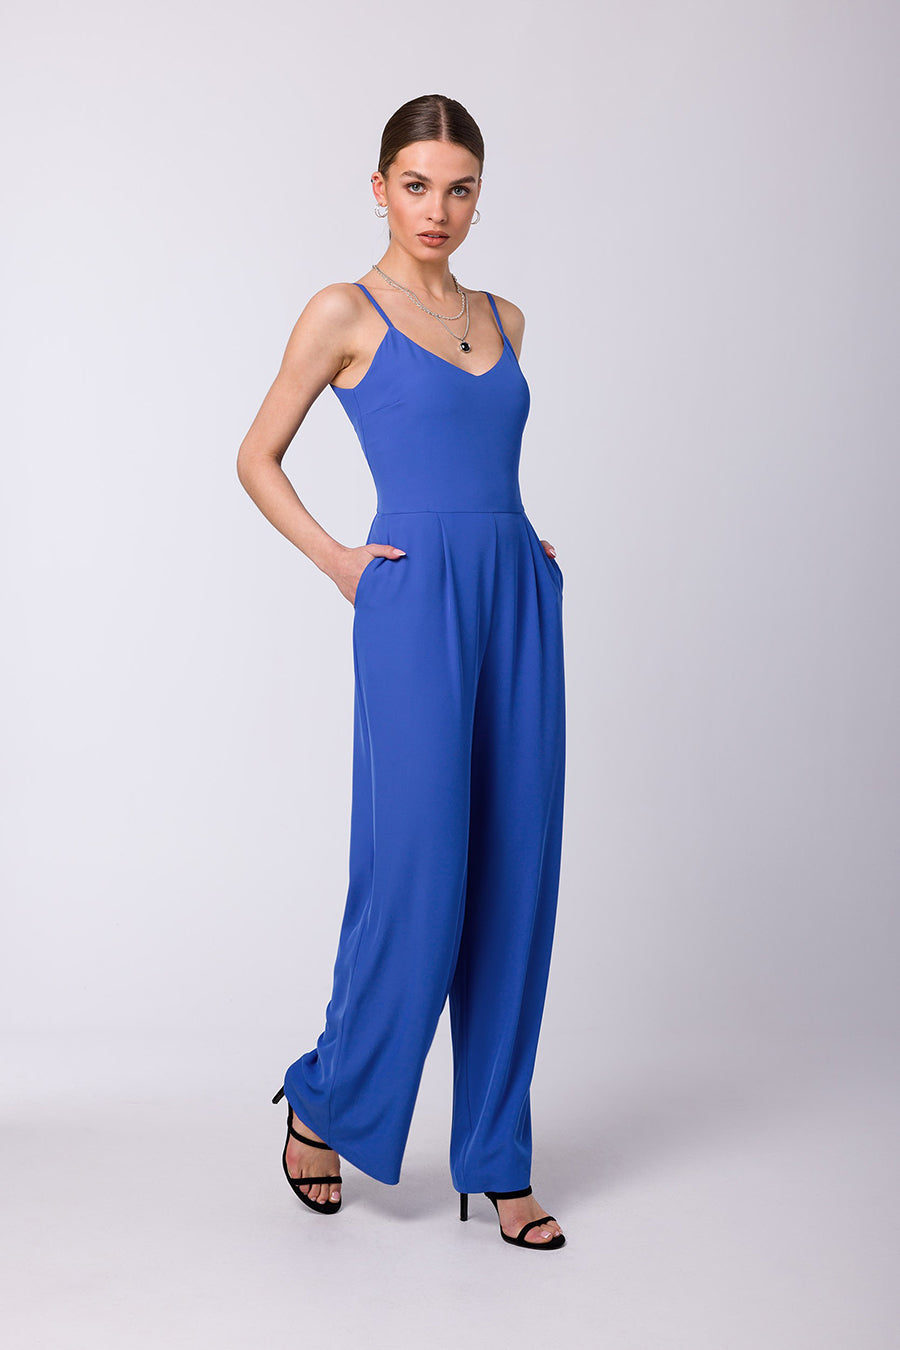 Γυναικεία ολόσωμη φόρμα Kate, Μπλε 2